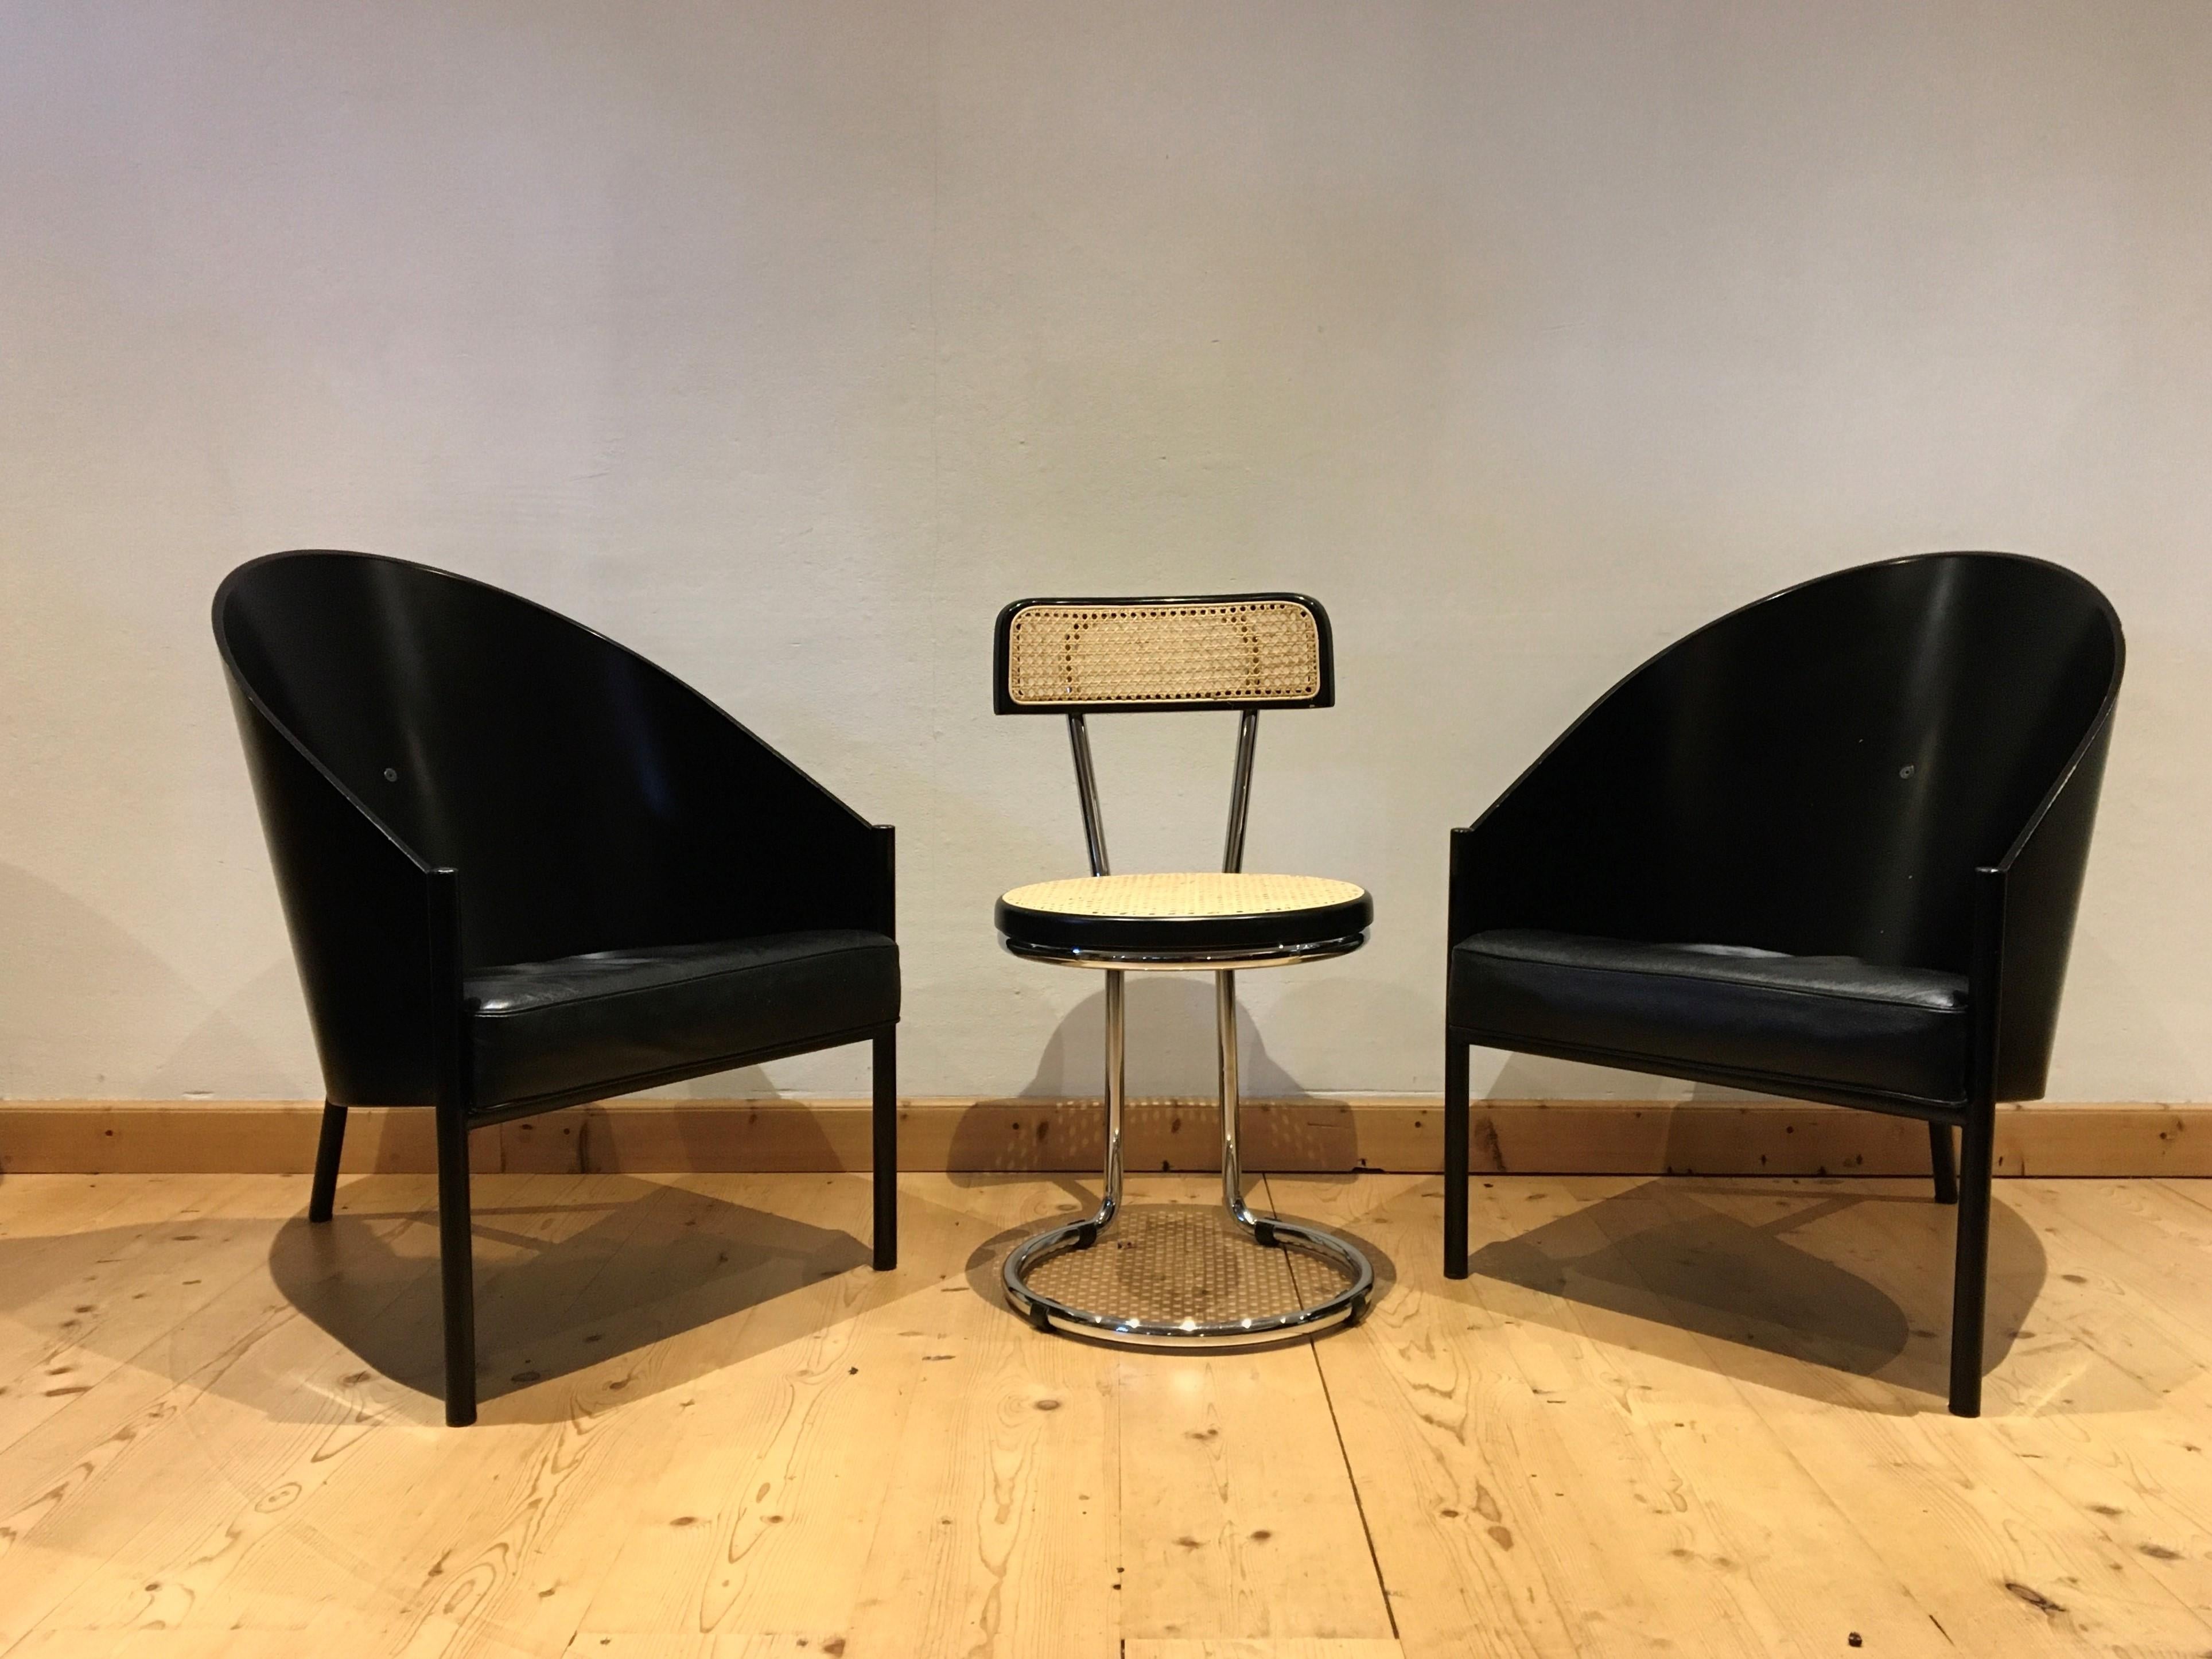 Set aus 2 ikonischen Sesseln oder Loungesesseln, entworfen von Philippe Starck und hergestellt von Driade Aleph Italien. 
Dieses Modell namens Pratfall ist größer als das Starck-Modell Costes, 
Diese Stühle eignen sich hervorragend als